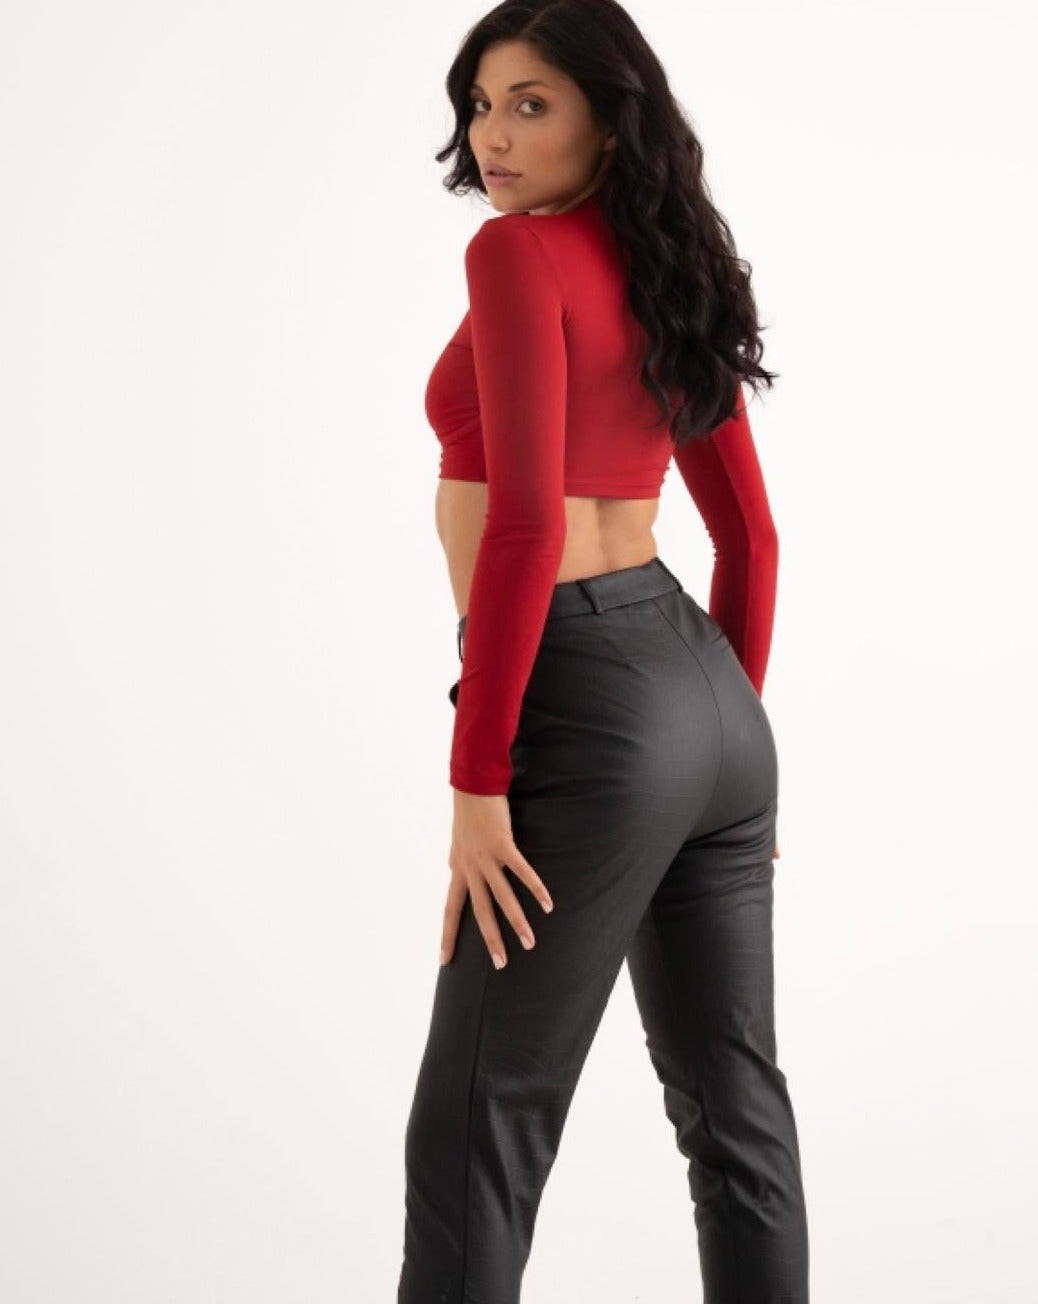 Дамски панталон SARA  https://bvseductive.com/products/дамски-панталон-sara  еко кожа стилен кожен панталон в черен цвят изработен от висококачествена материя с висока талия ,ръб и изчистен дизайн елегантно предложение за Вашата женствена визия